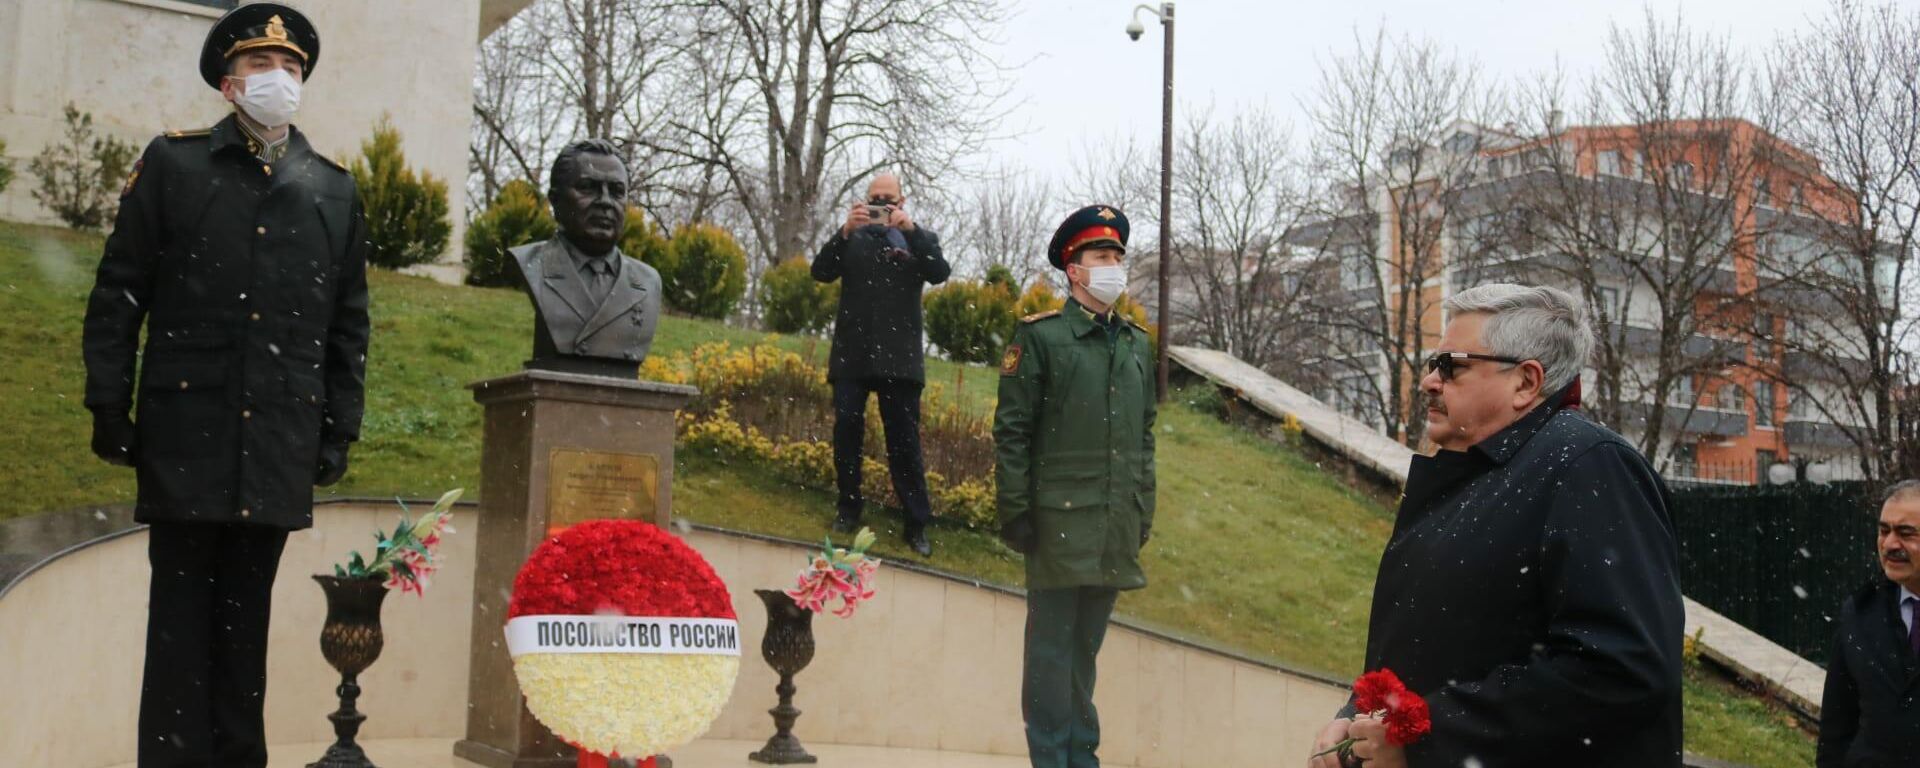 Aleksey Yerhov - Karlov, ölümünün beşinci yılında Ankara'daki törenle anıldı - Sputnik Türkiye, 1920, 19.12.2021